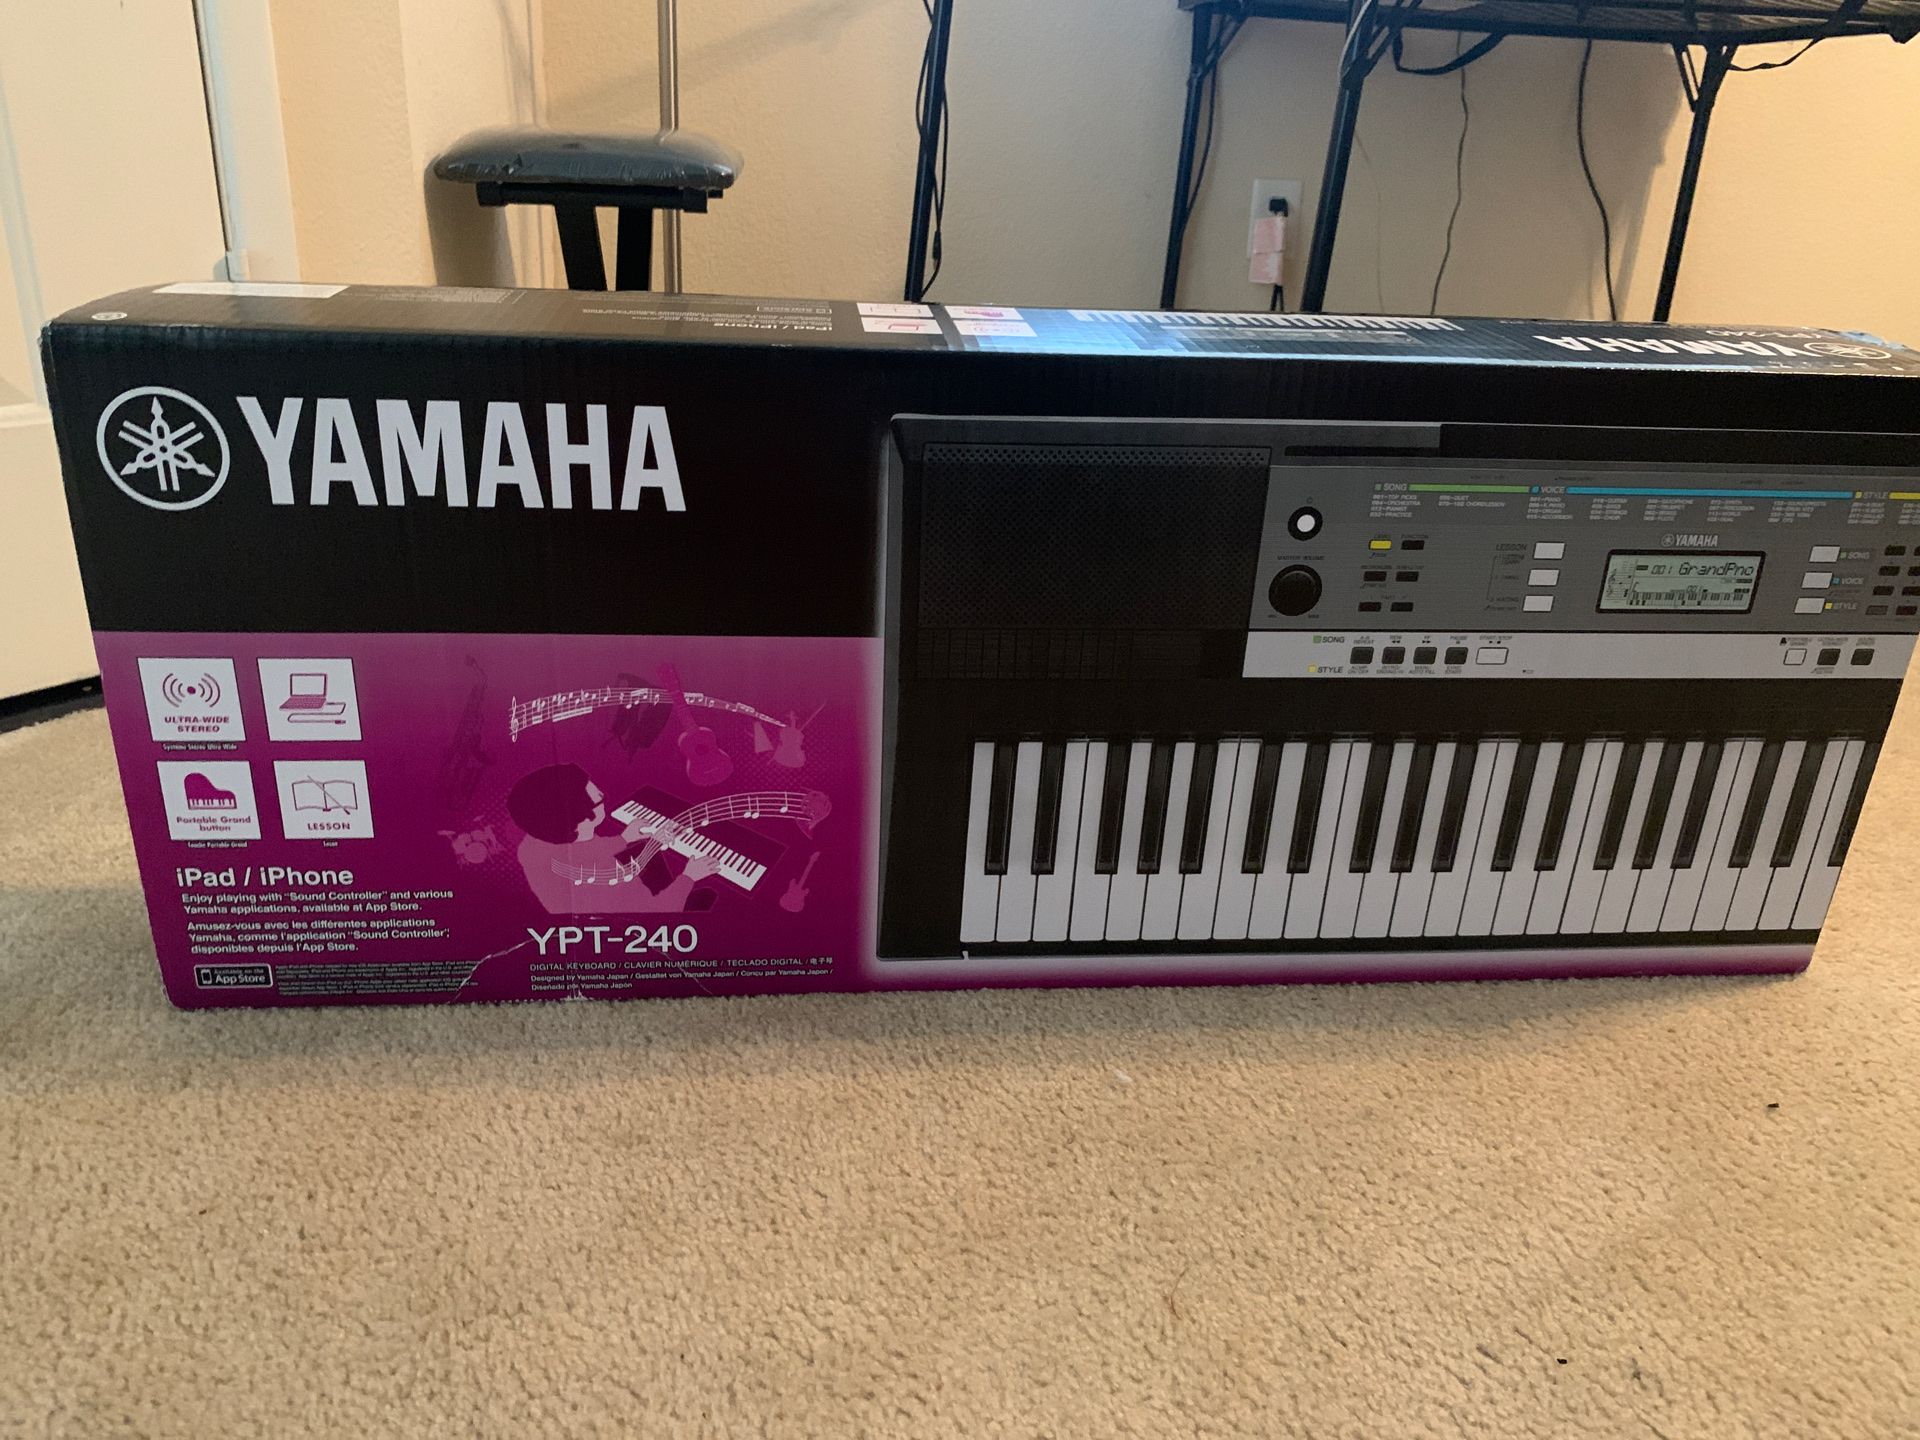 Yamaha YPT-240 keyboard